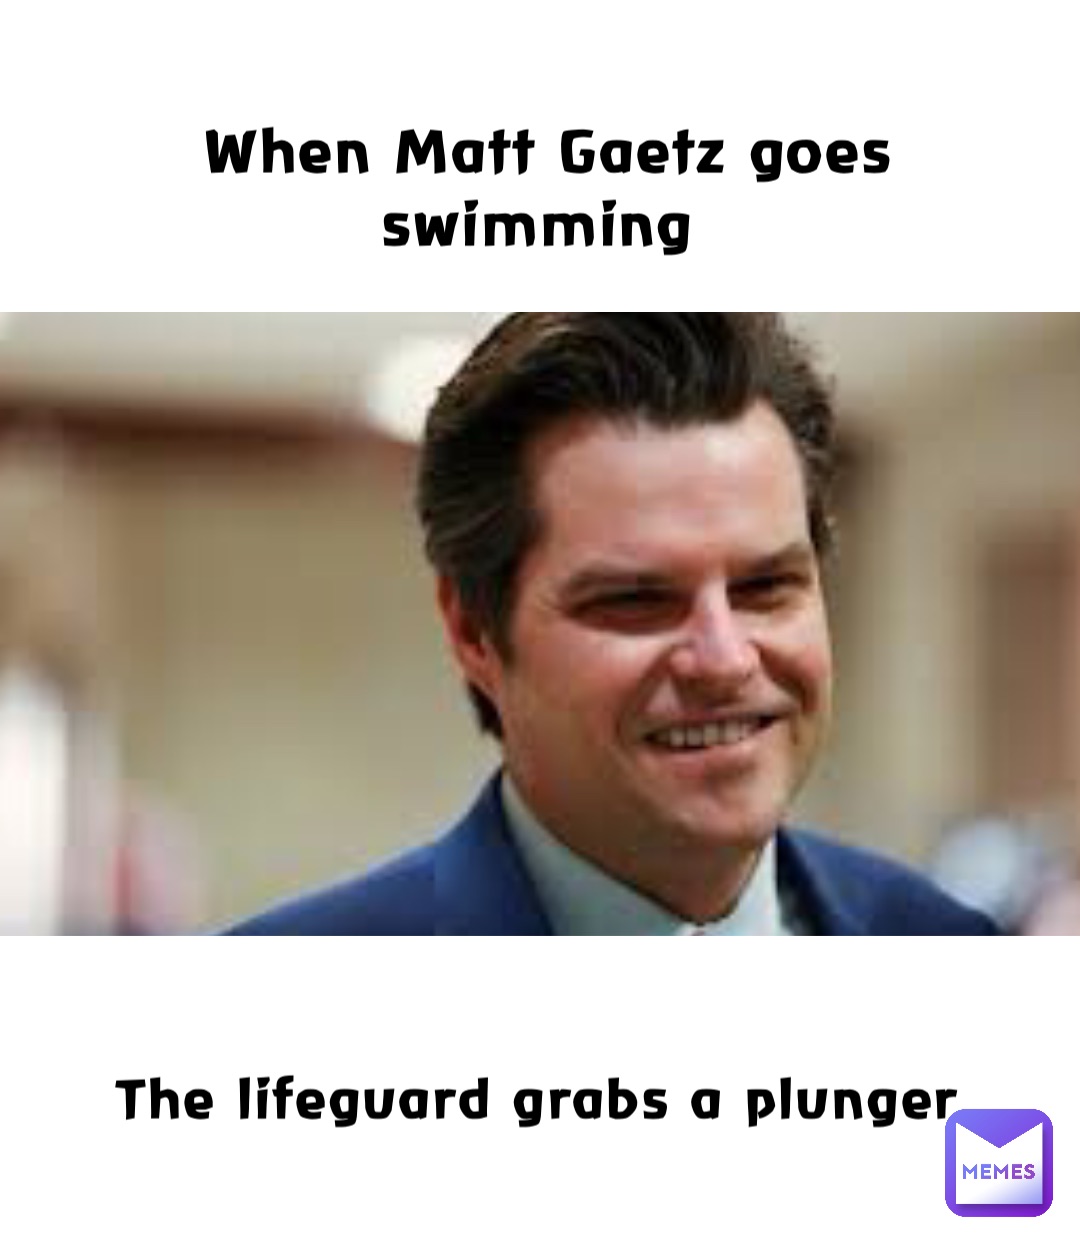 When Matt Gaetz goes swimming The lifeguard grabs a plunger